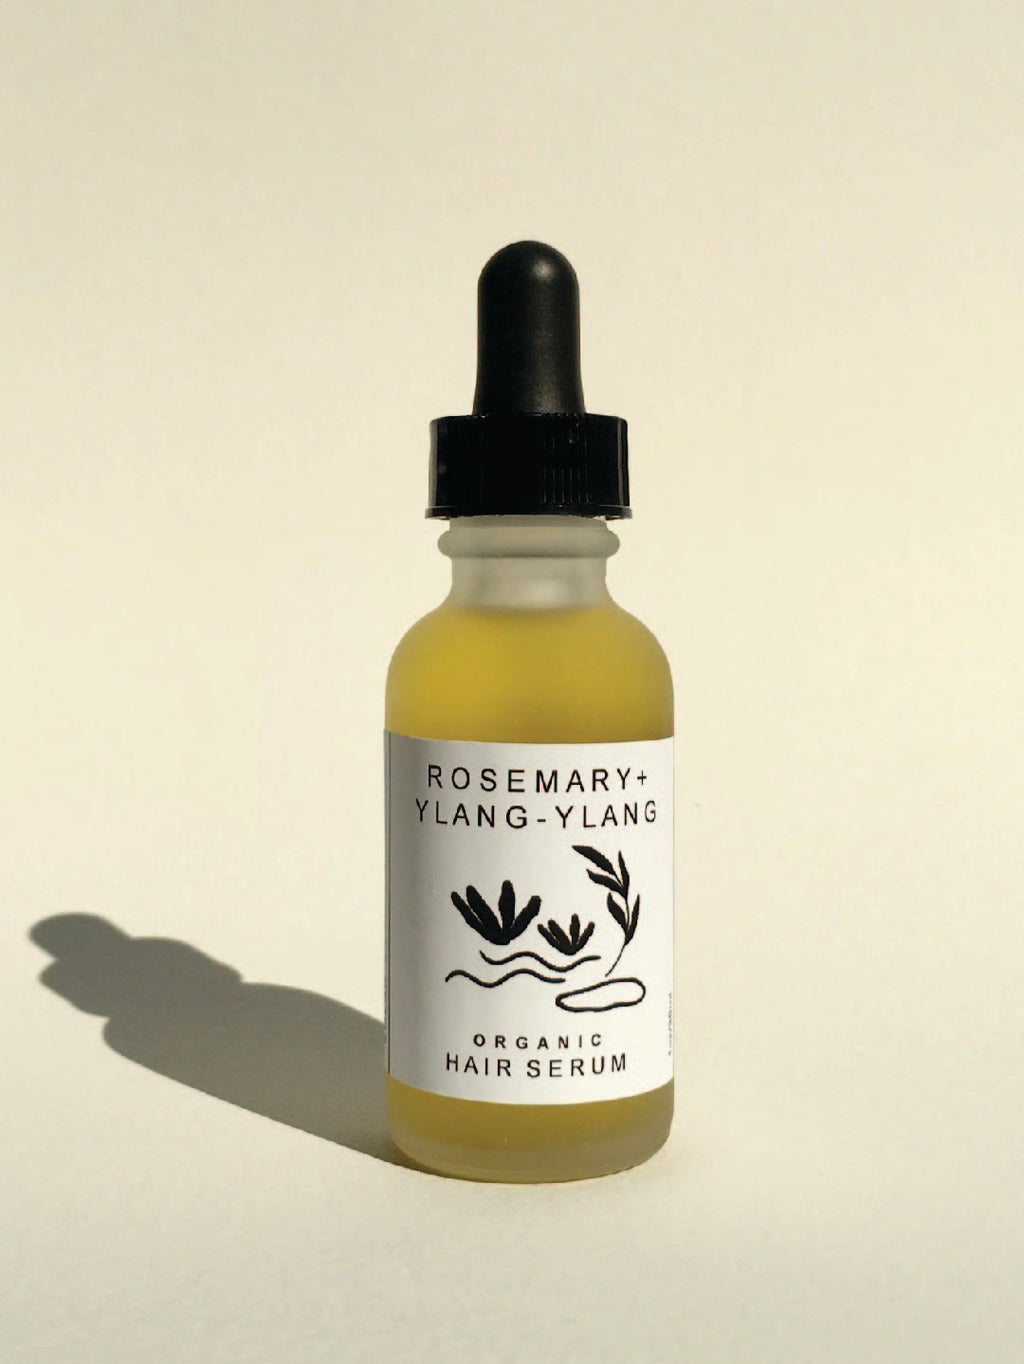 Ylang-Ylang + Rosemary Hair Serum by Solar Noon Botanicals